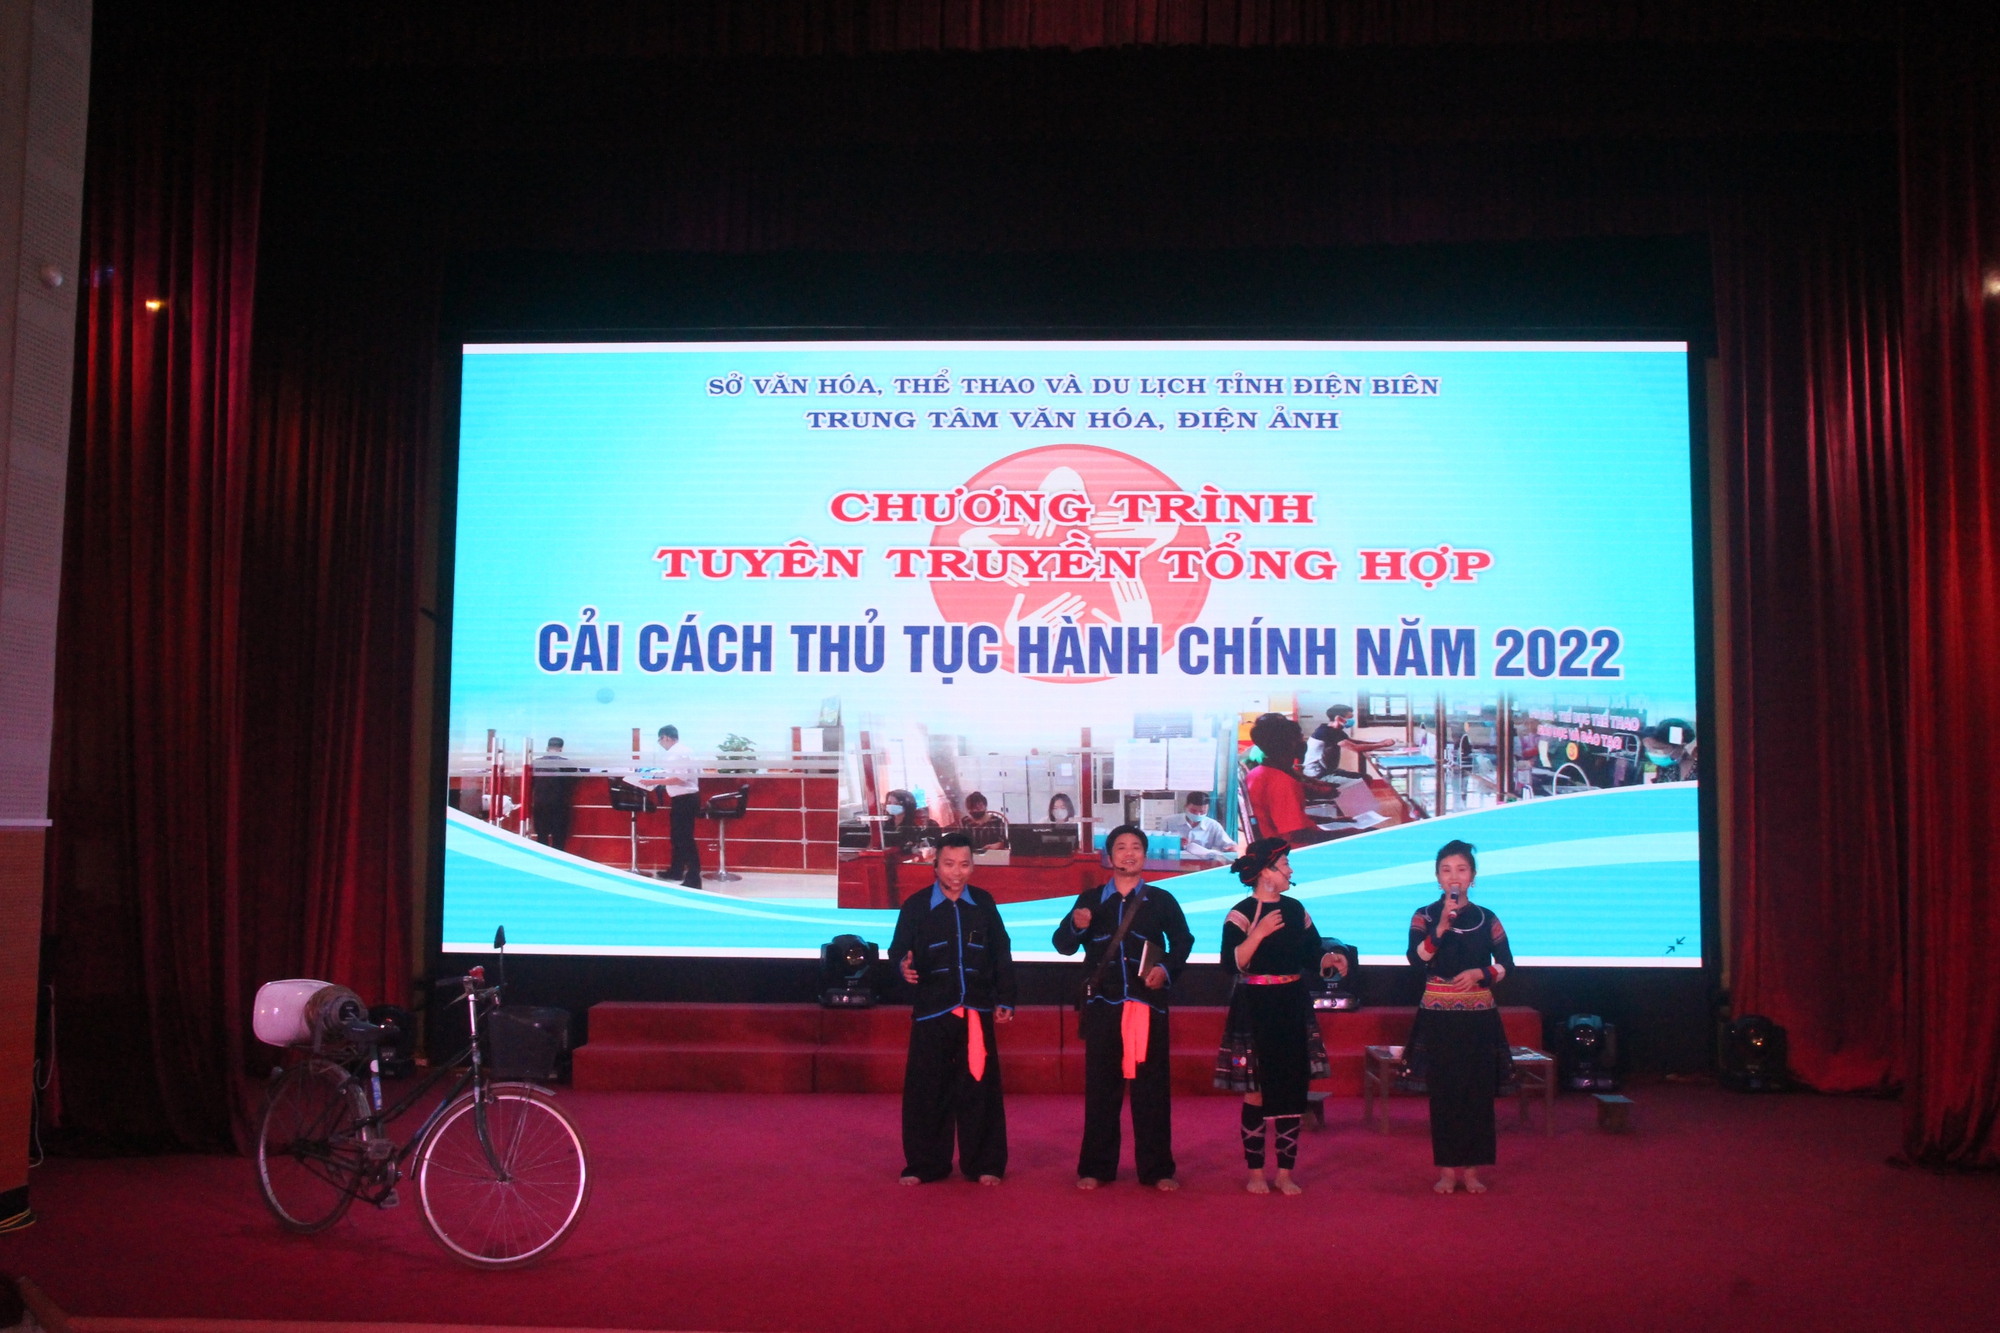 Điện Biên: Trung tâm Văn hóa, Điện ảnh tỉnh thực hiện chương trình tuyên truyền tổng hợp cải cách thủ tục hành chính năm 2022 - Ảnh 1.